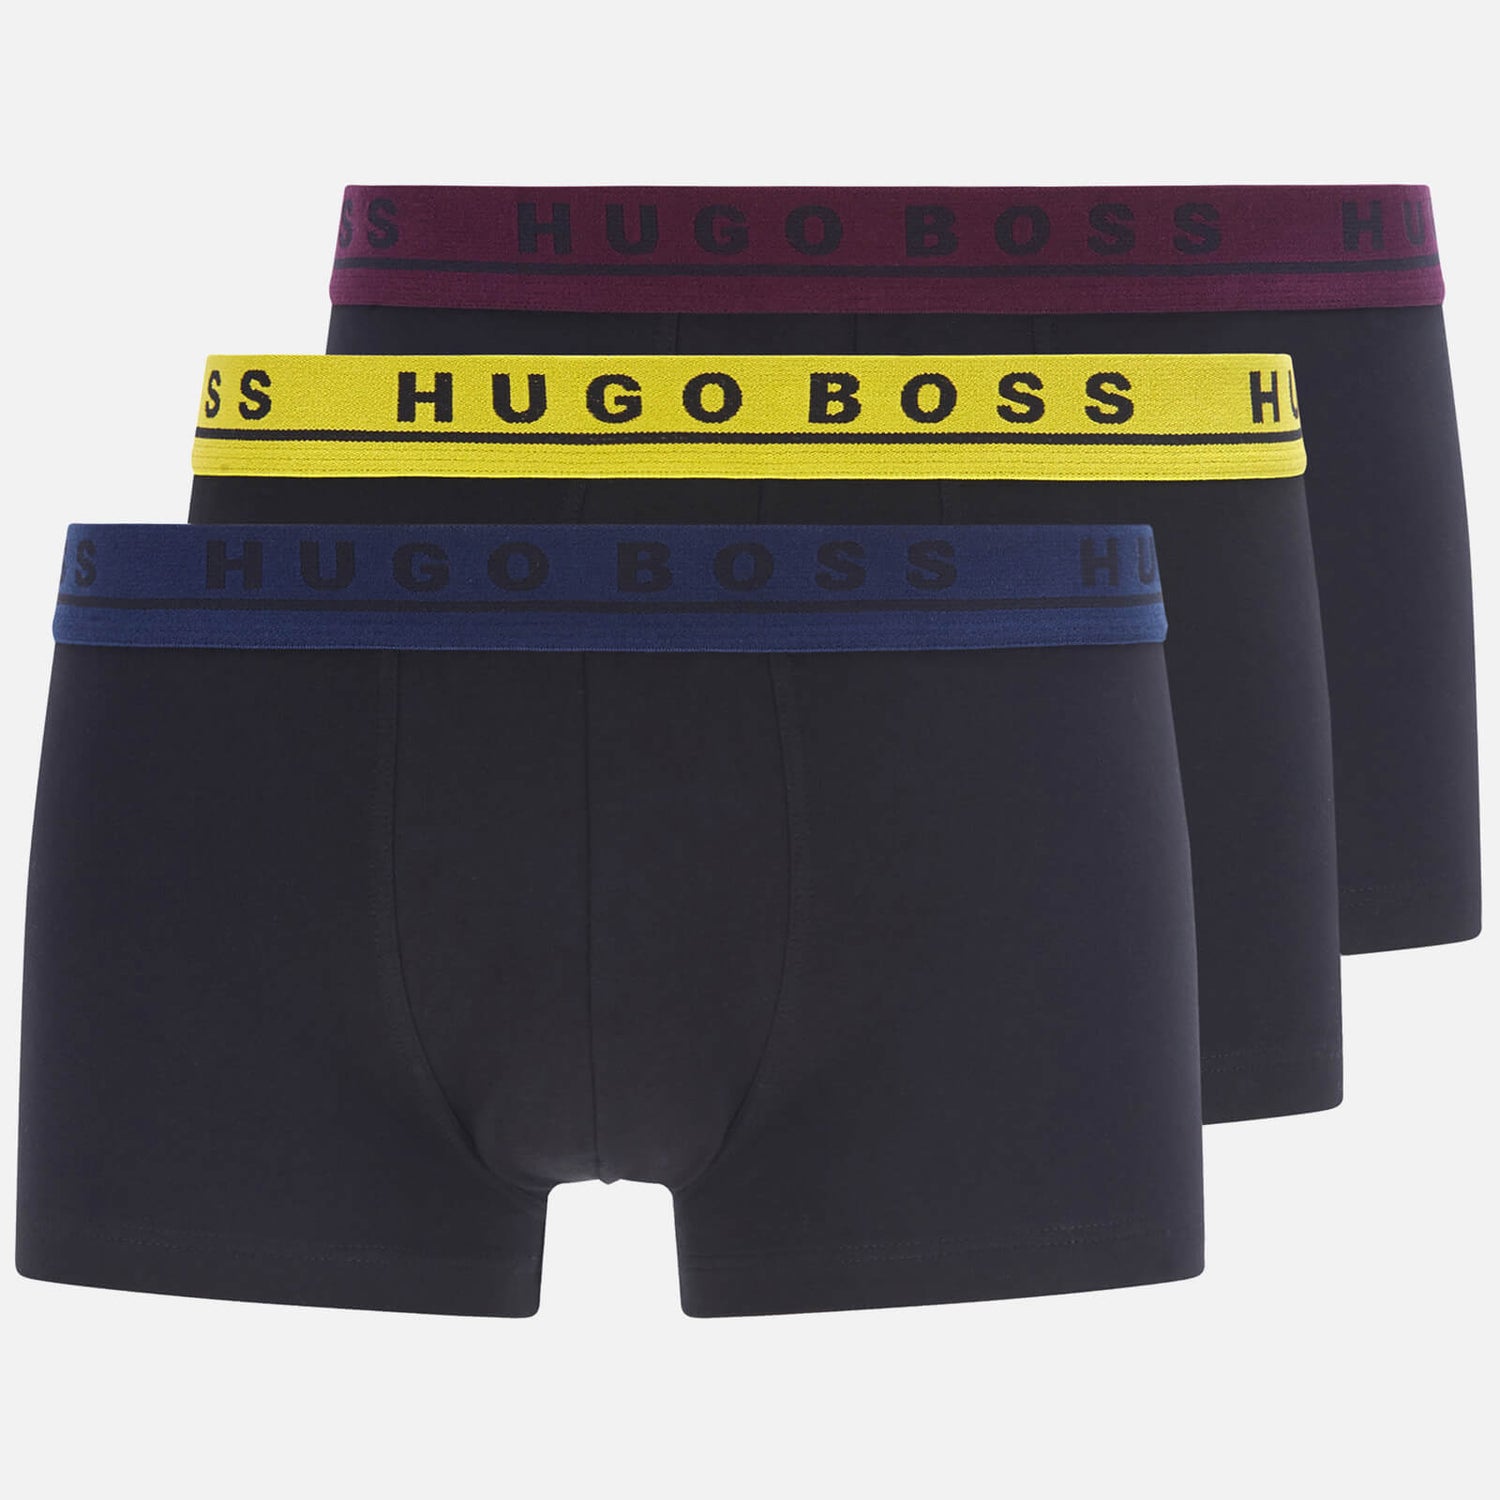 BOSS Bodywear Men's 3-Pack Trunk Boxer Shorts - Black/Multi